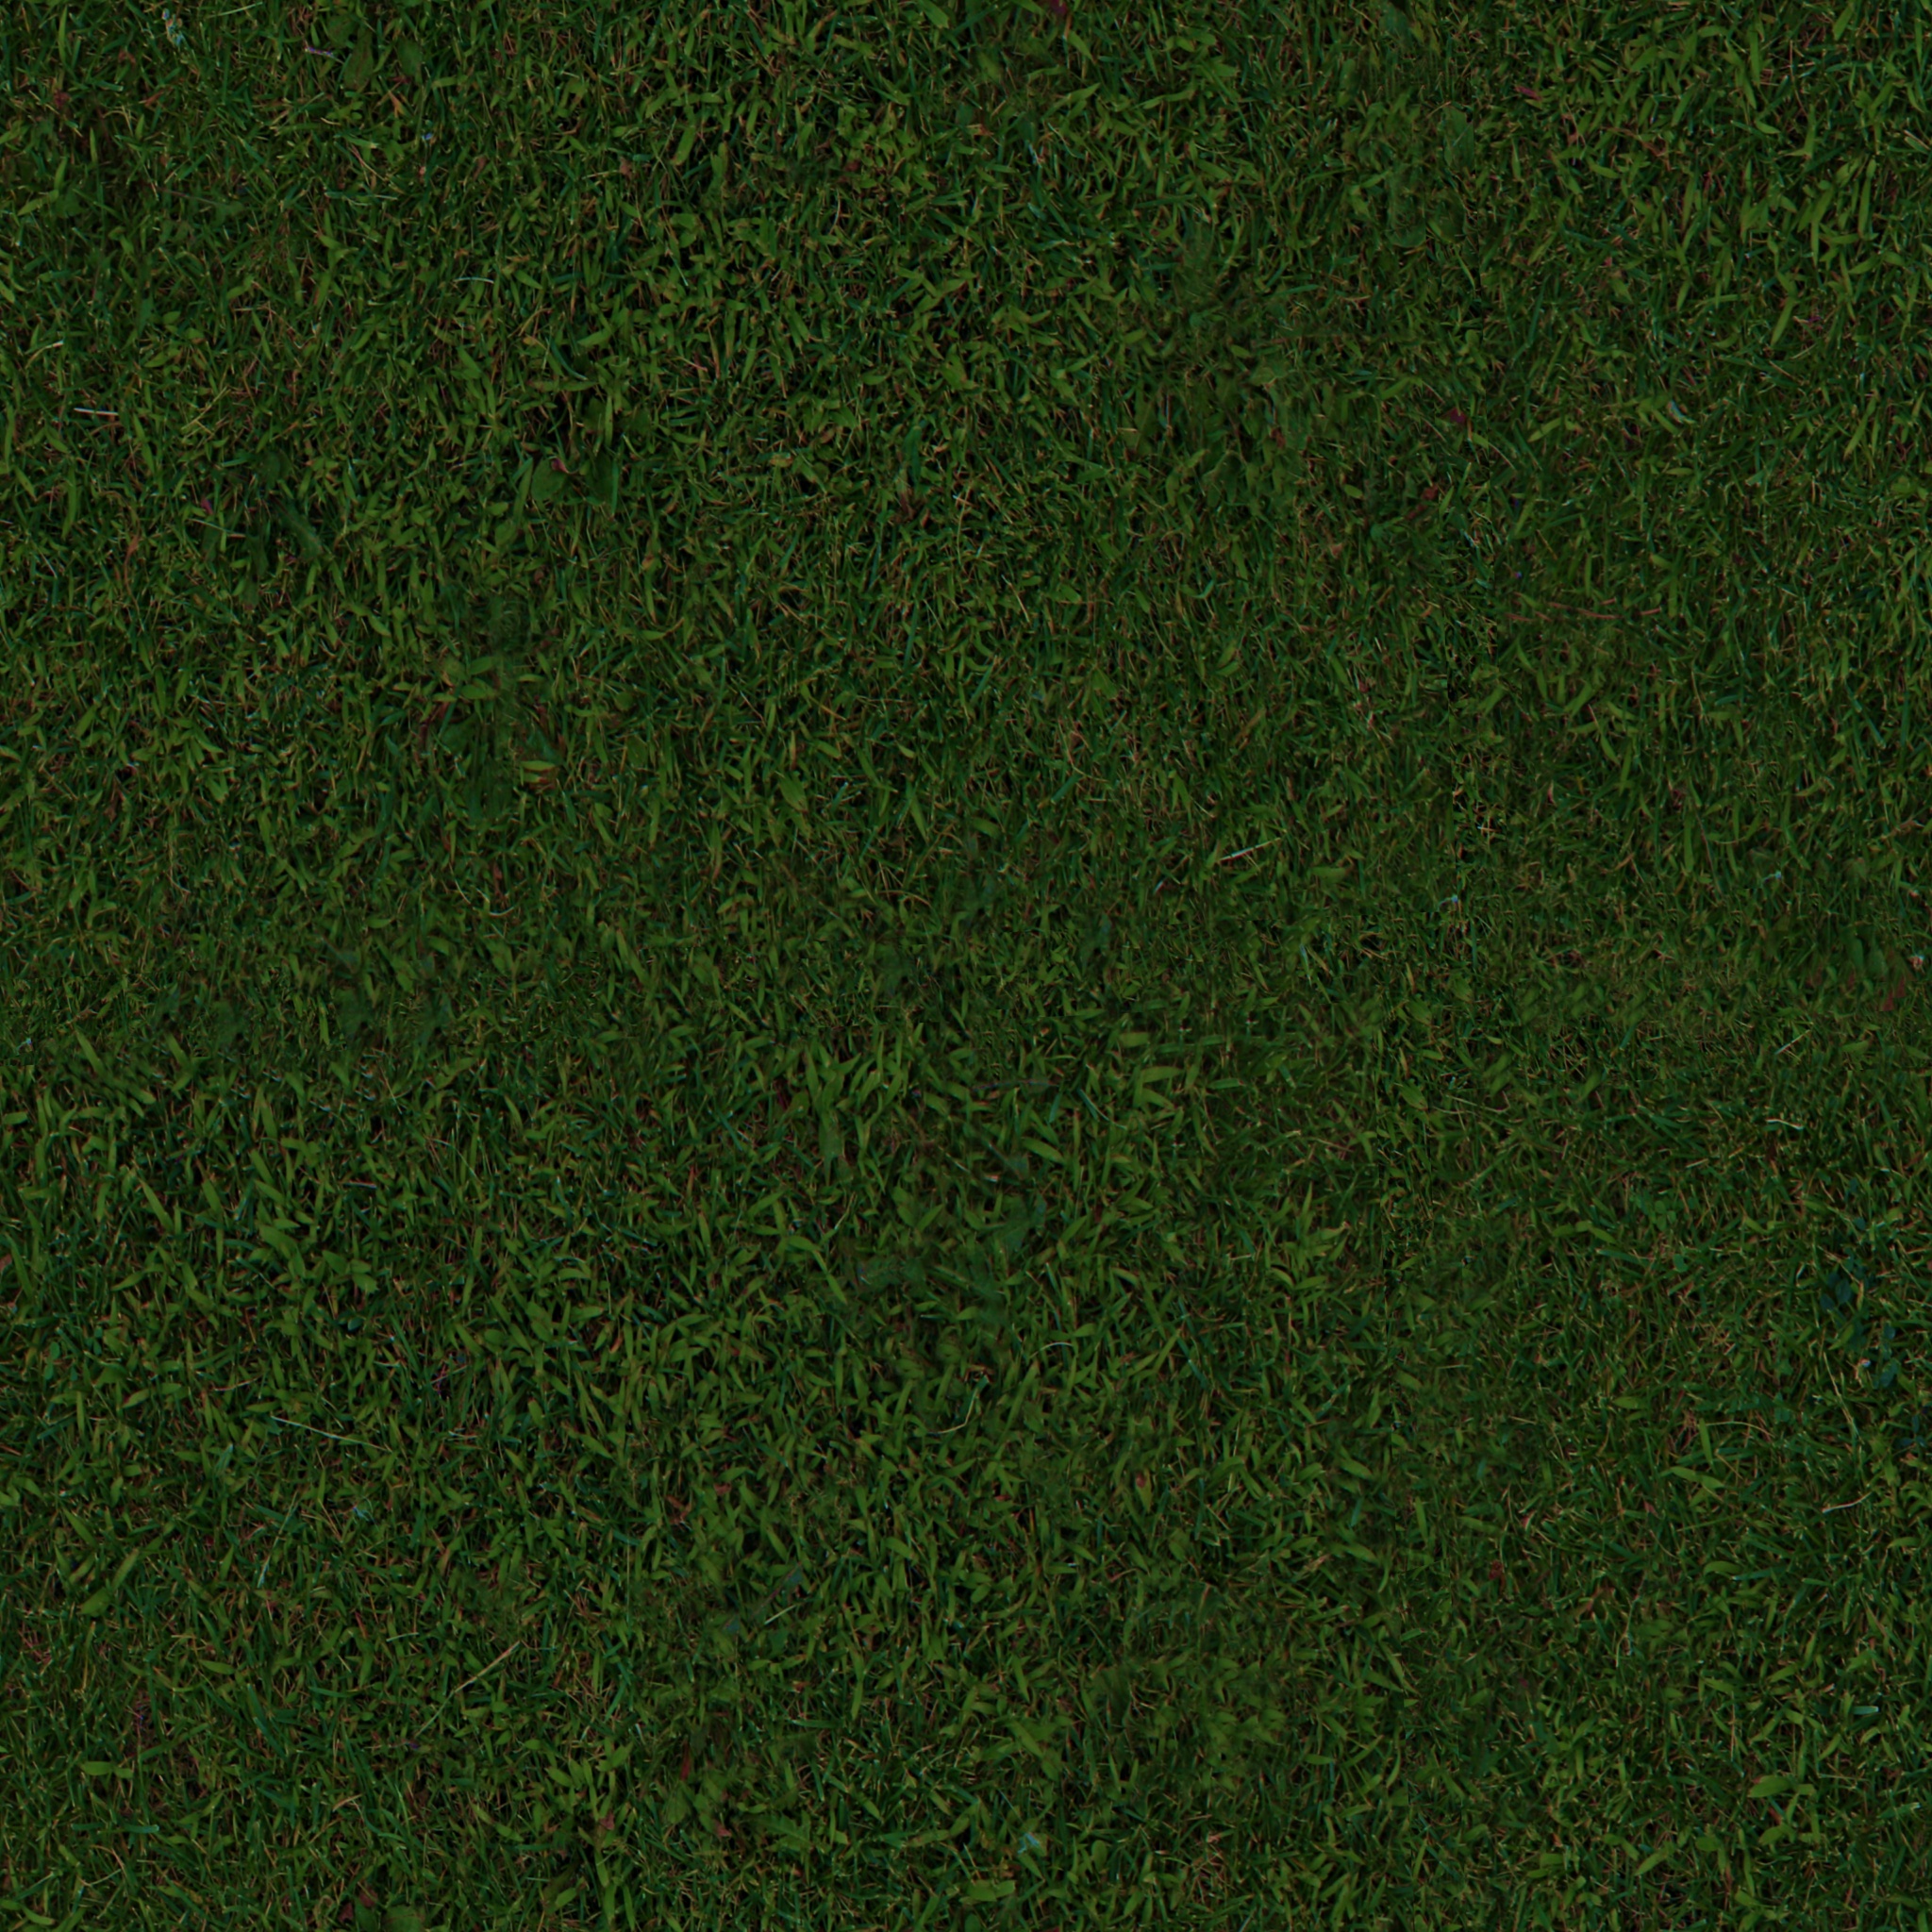 grass texture seamless